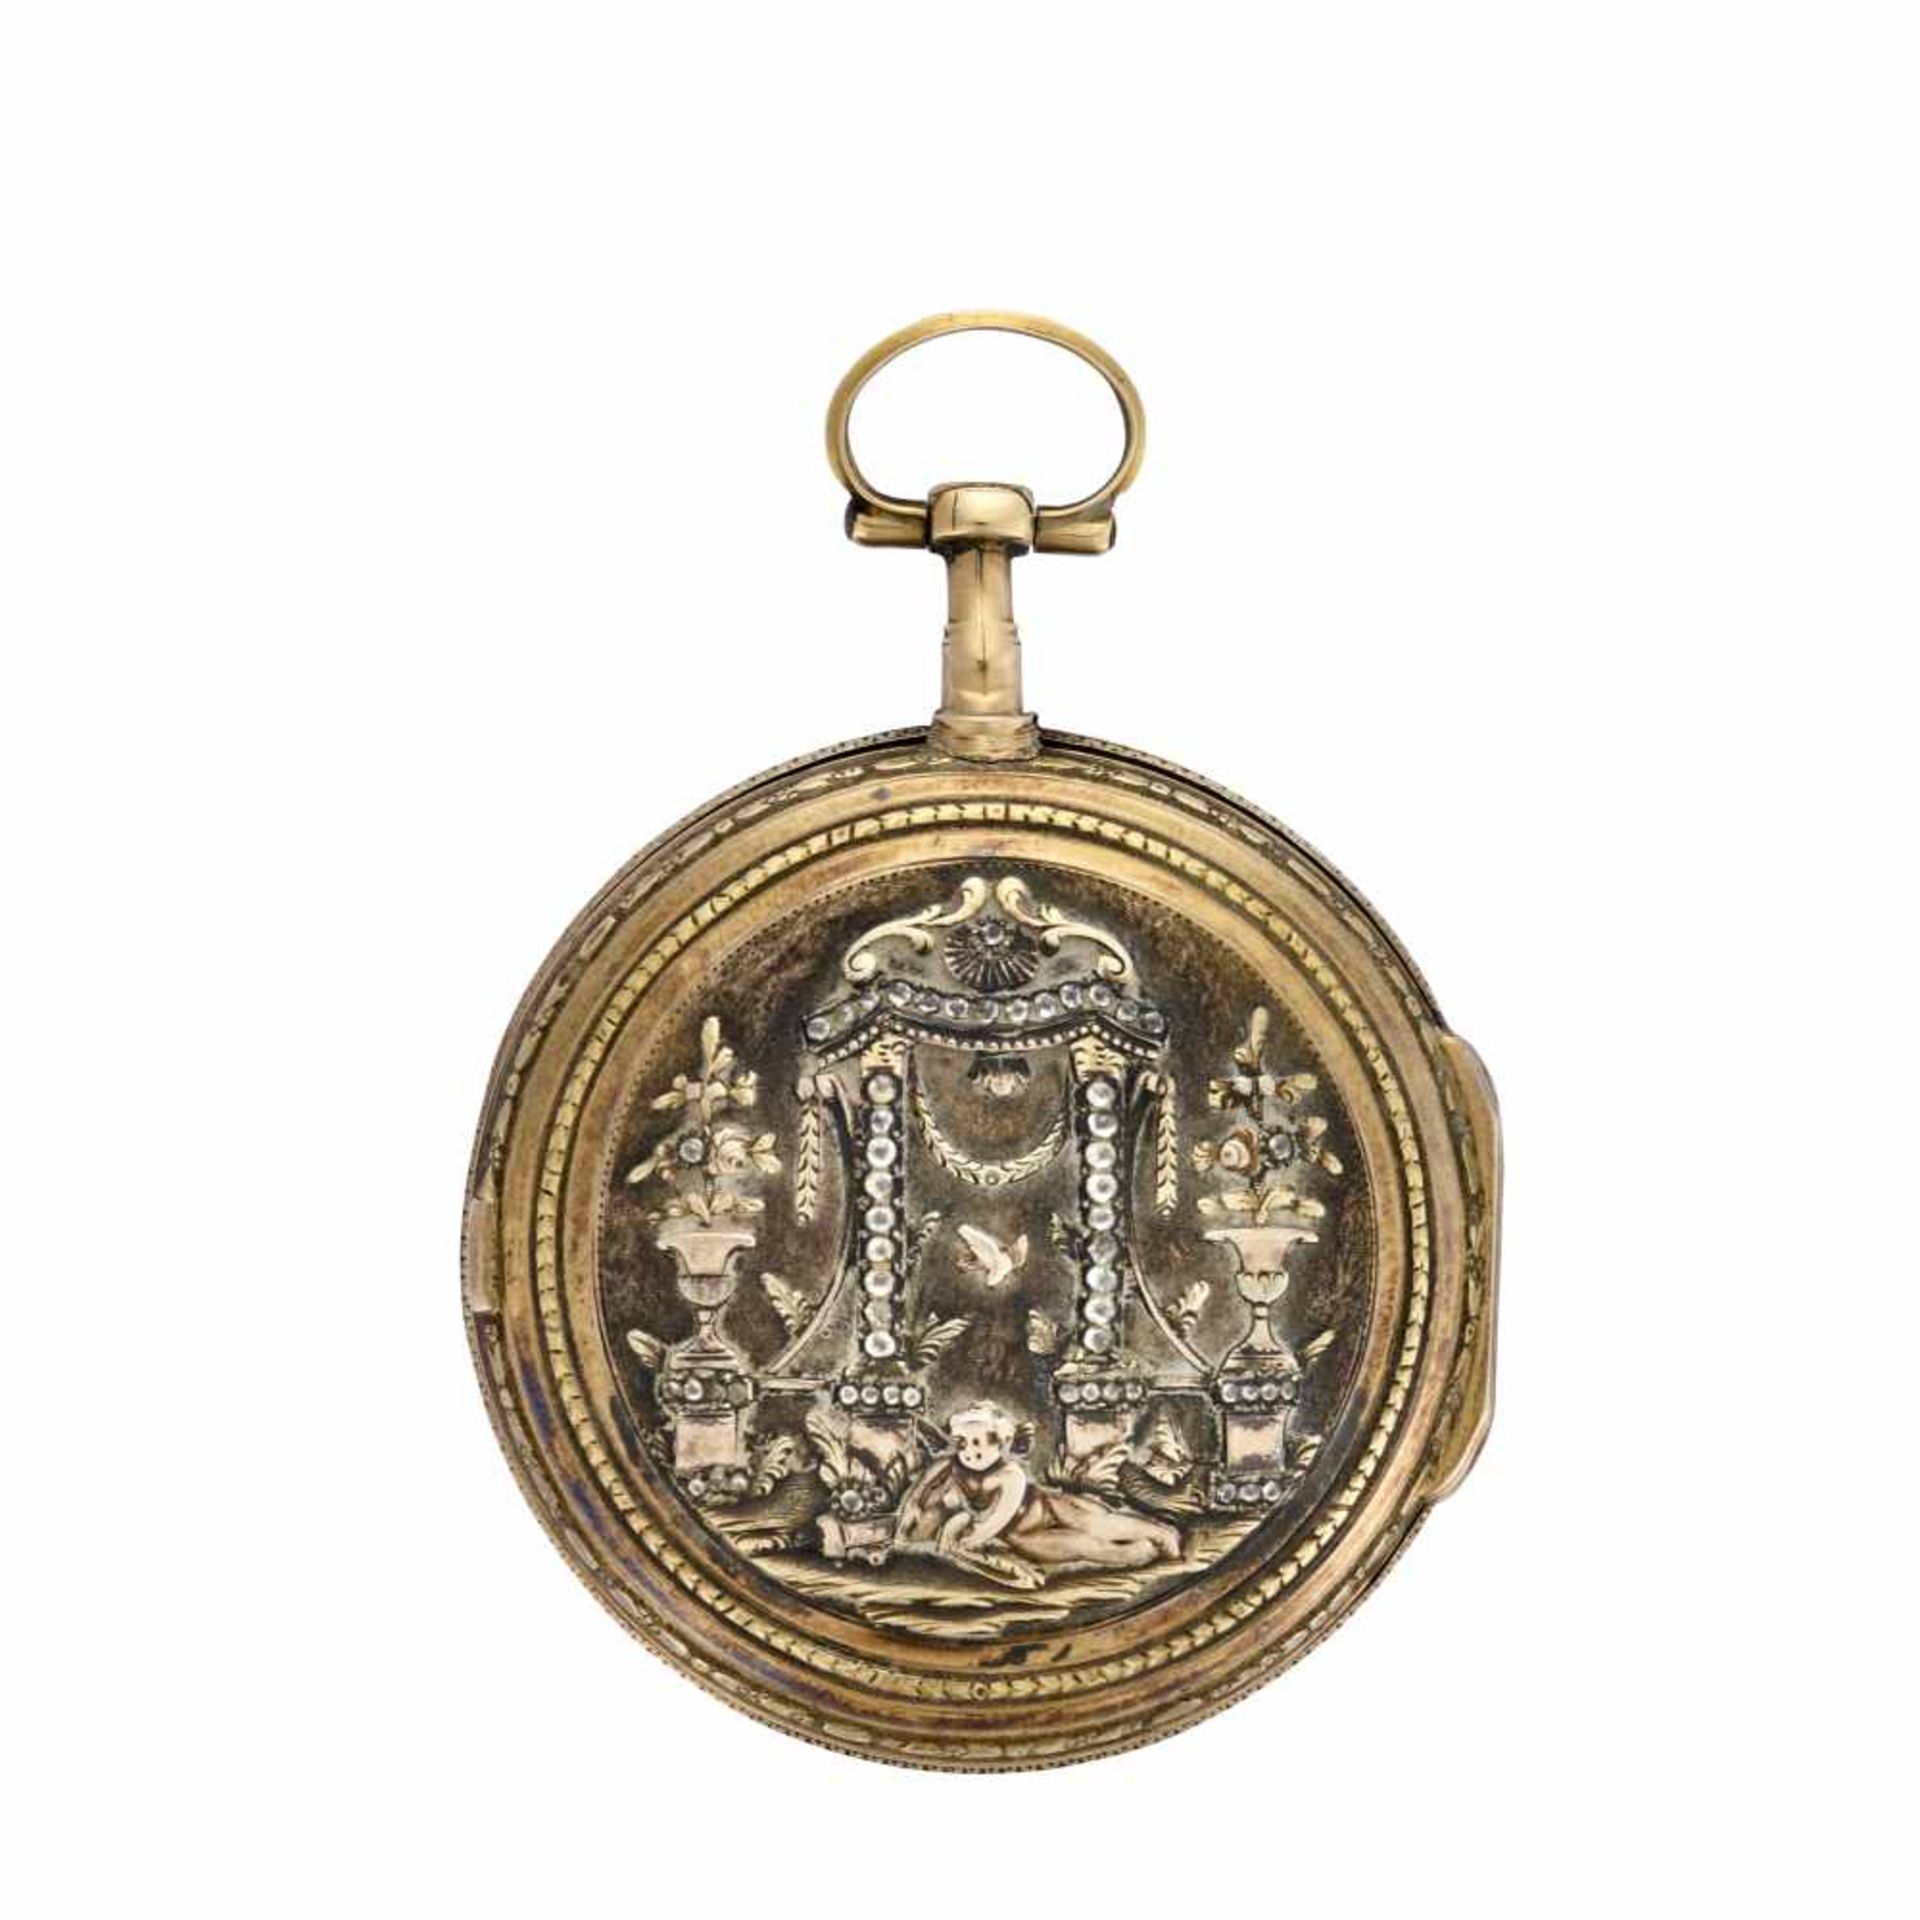 BORDIER GENEVE18K gold pocket watchLate XVIII/early XIX centuryKey-wind movementWhite enamel dial - Bild 2 aus 2